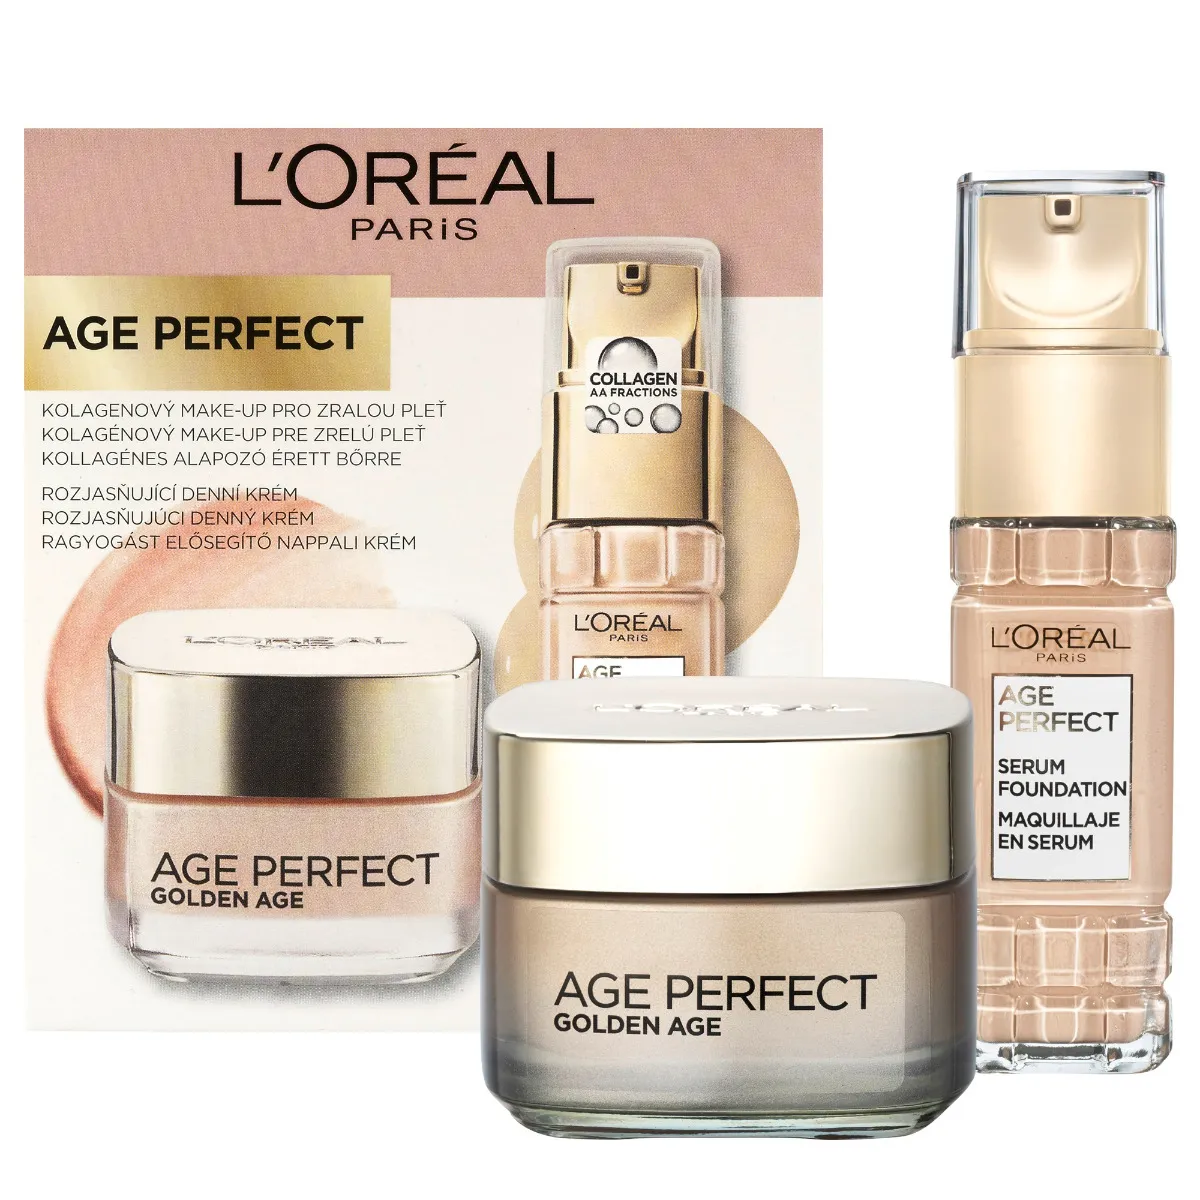 L'Oréal Paris Age Perfect Duo Packs Kolagenový Makeup 140 Linen a denný krém